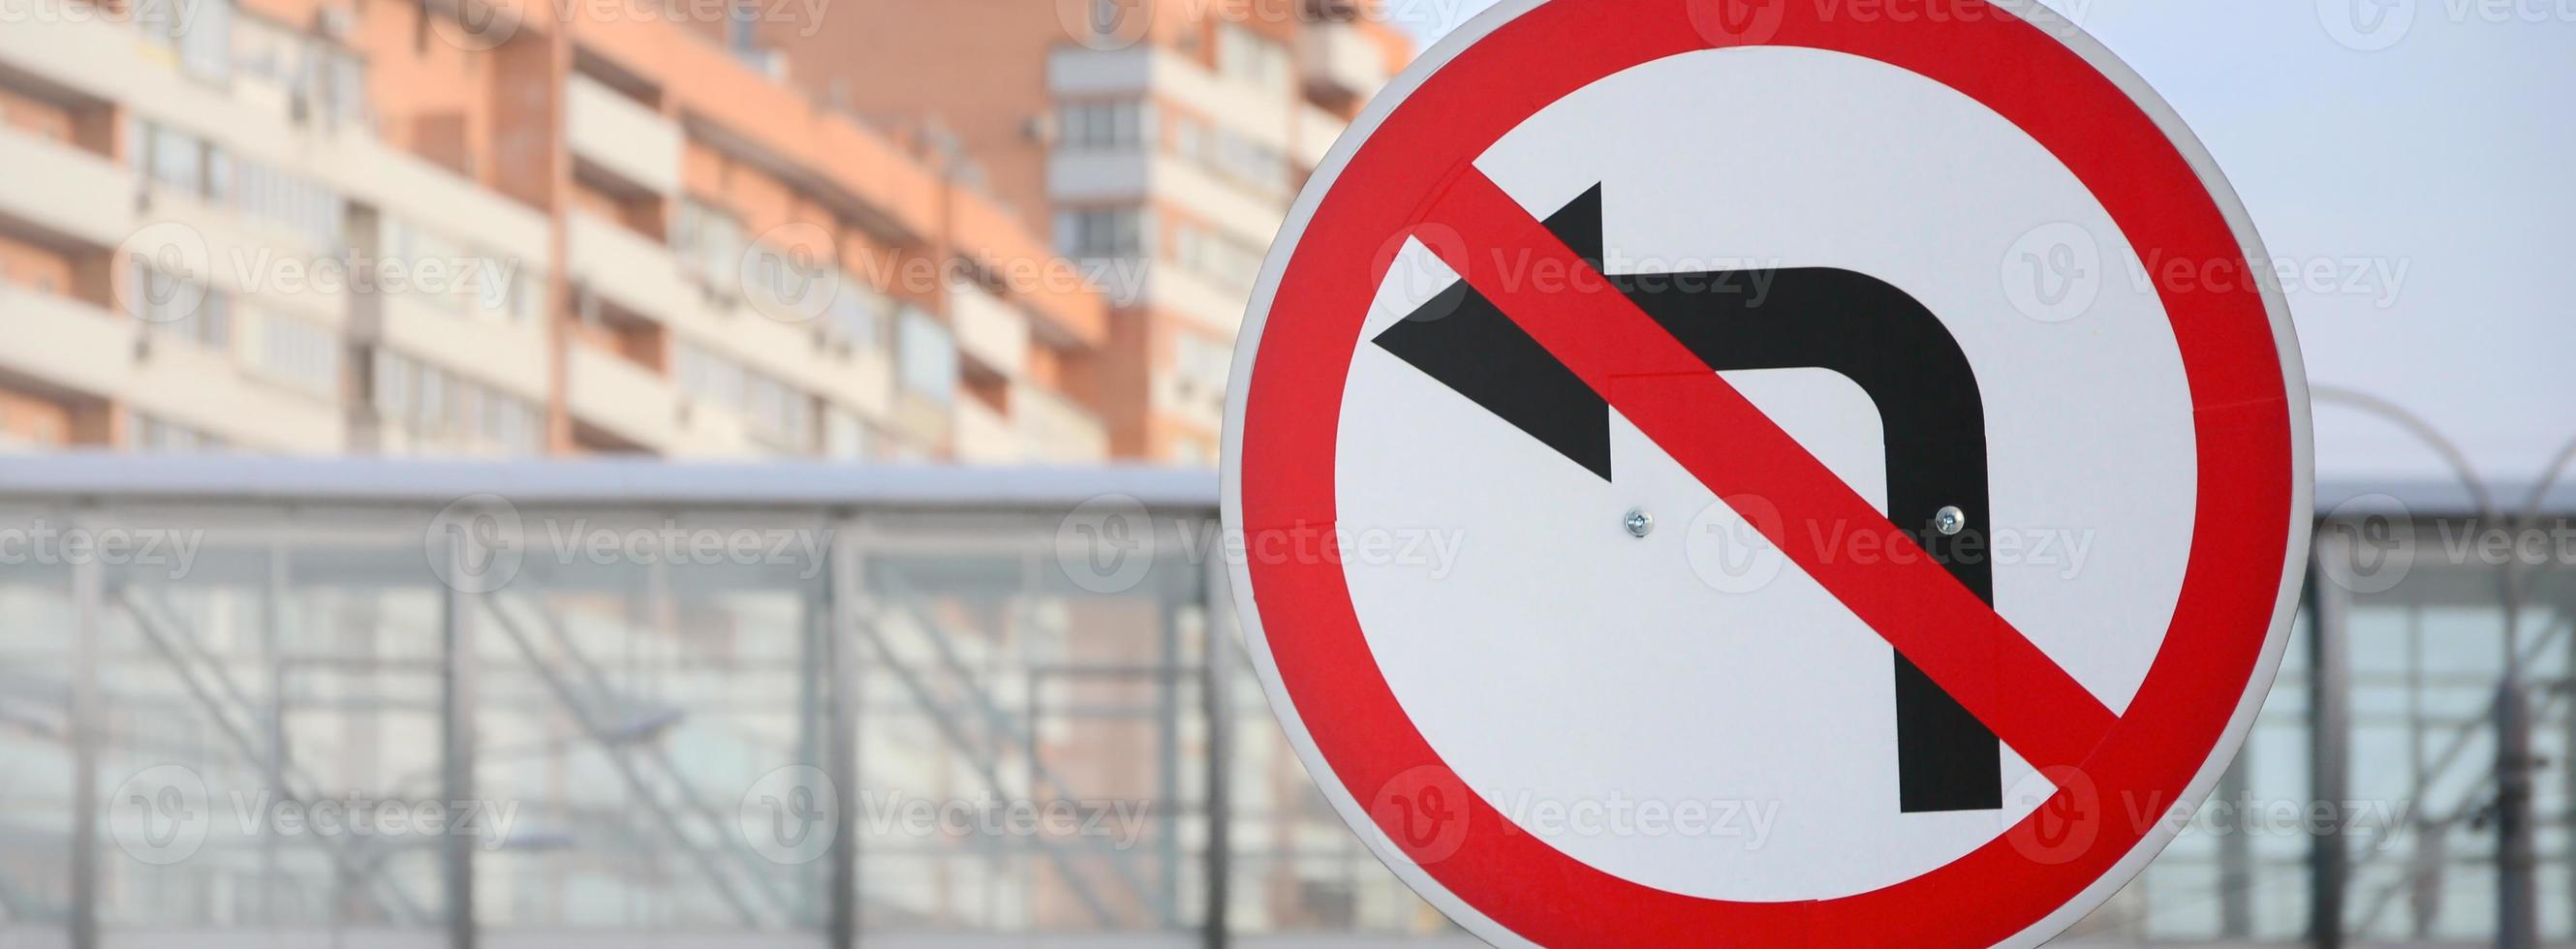 Prohibido girar a la izquierda. señal de tráfico con flecha tachada a la izquierda foto